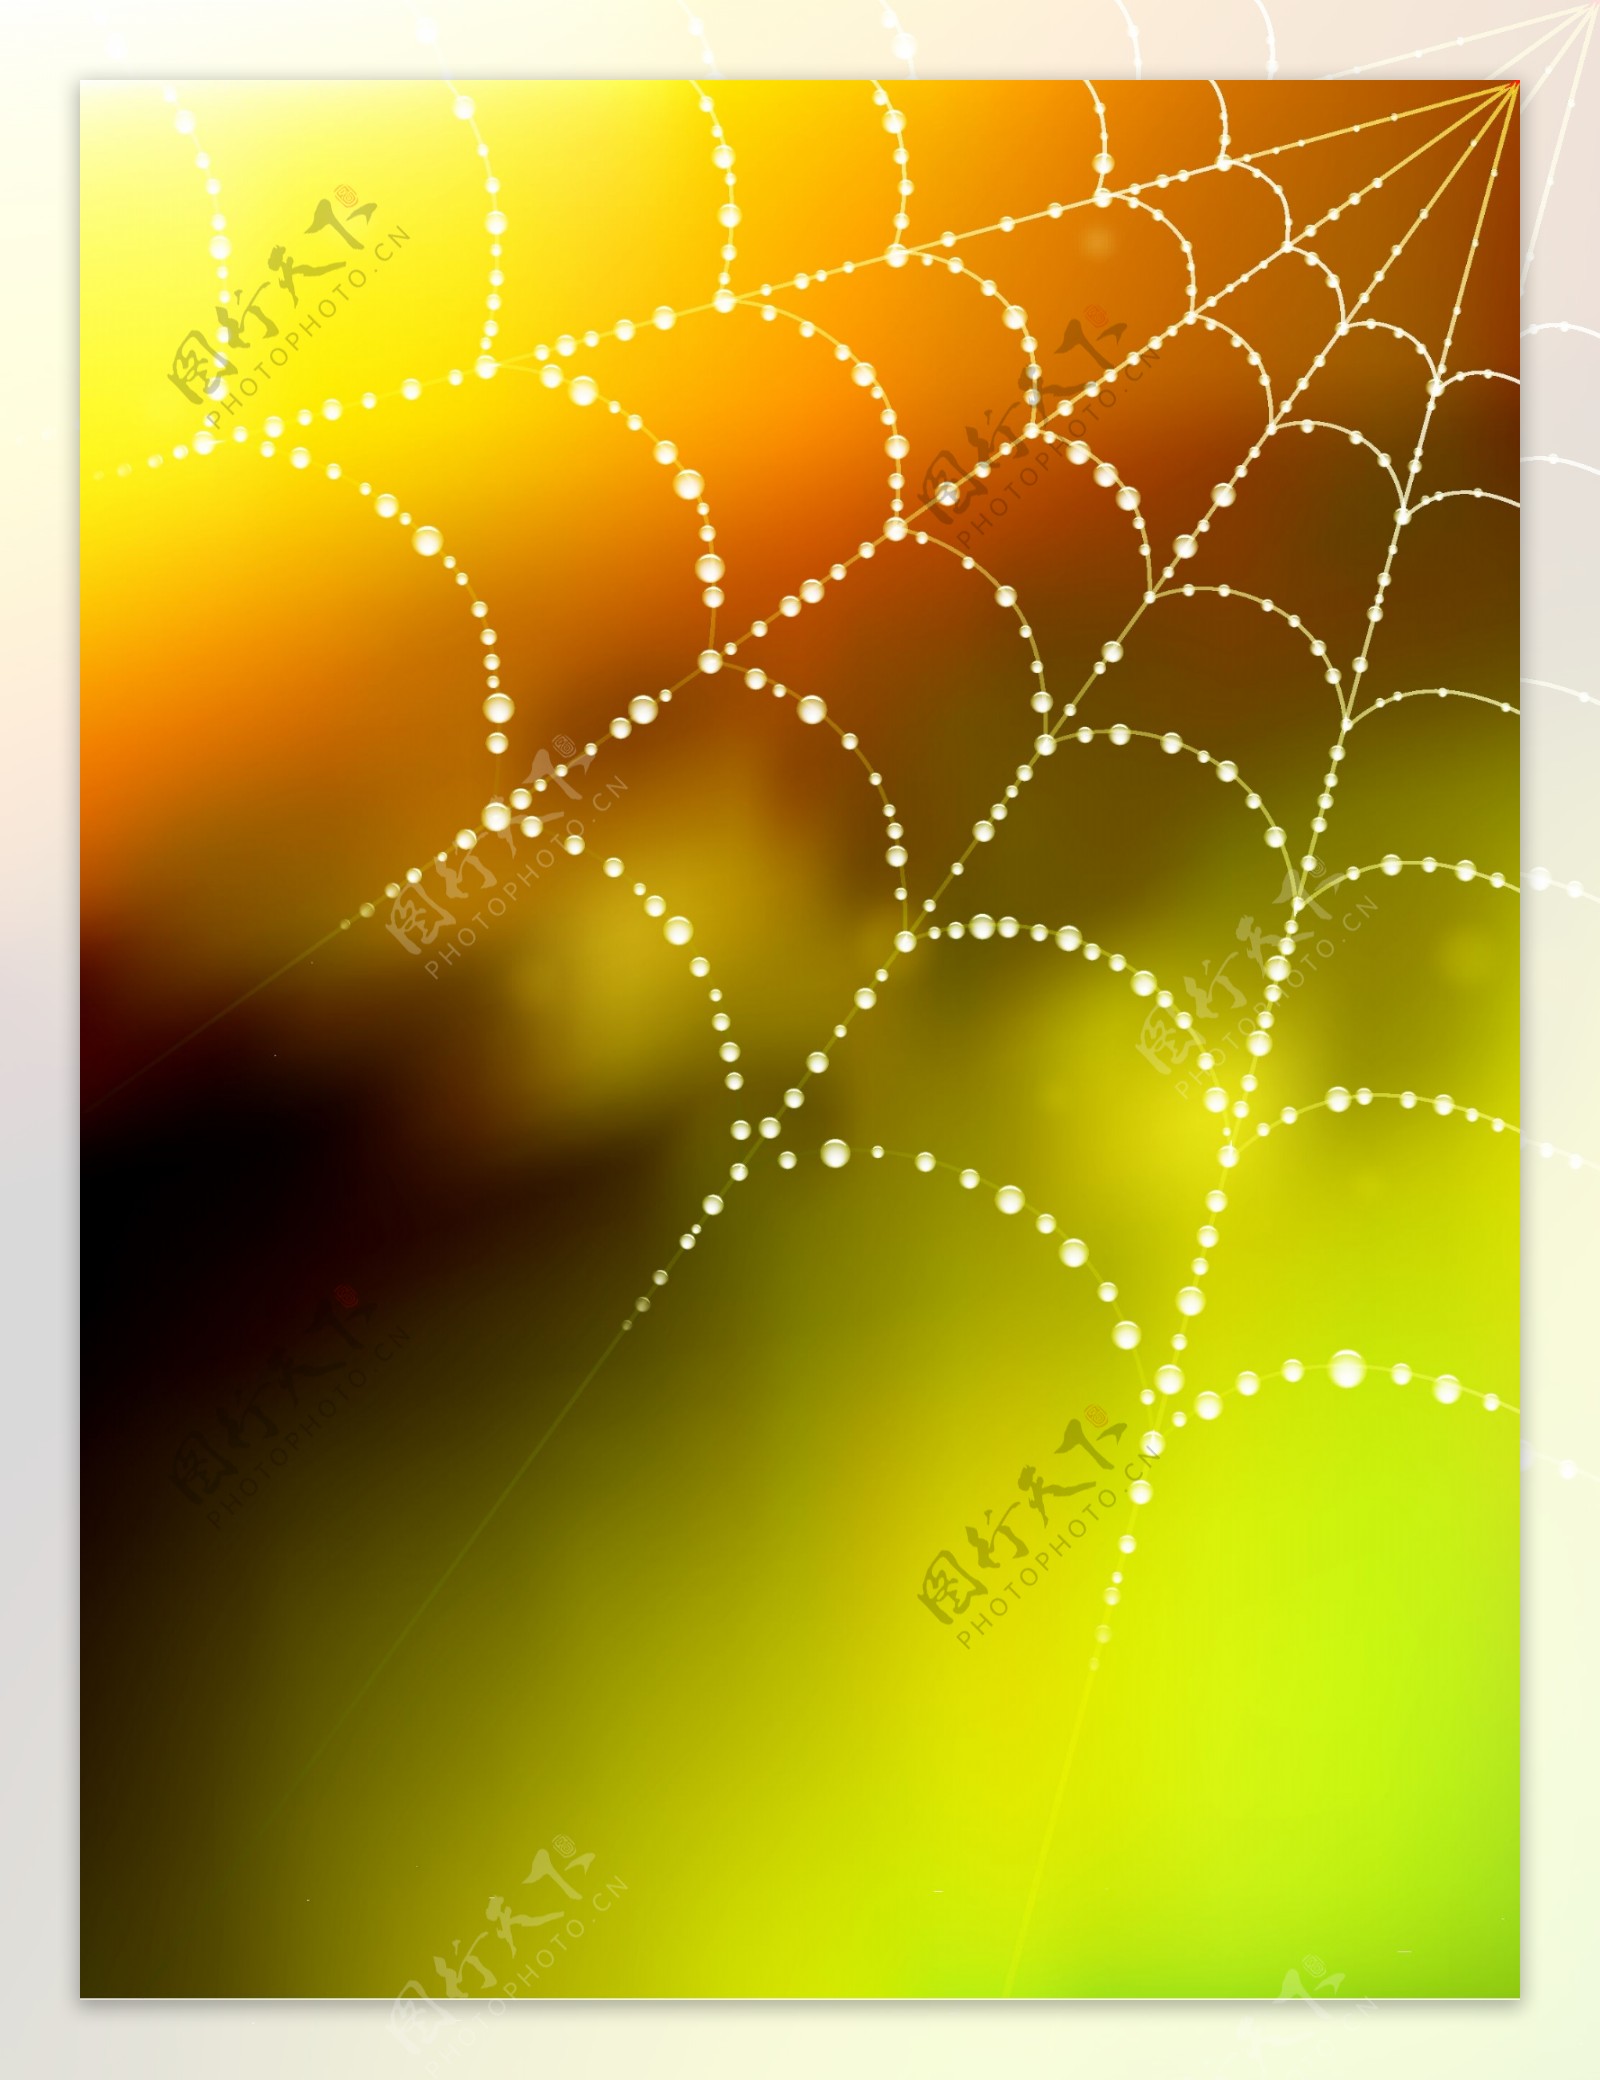 闪烁的蜘蛛网模糊的背景与液滴